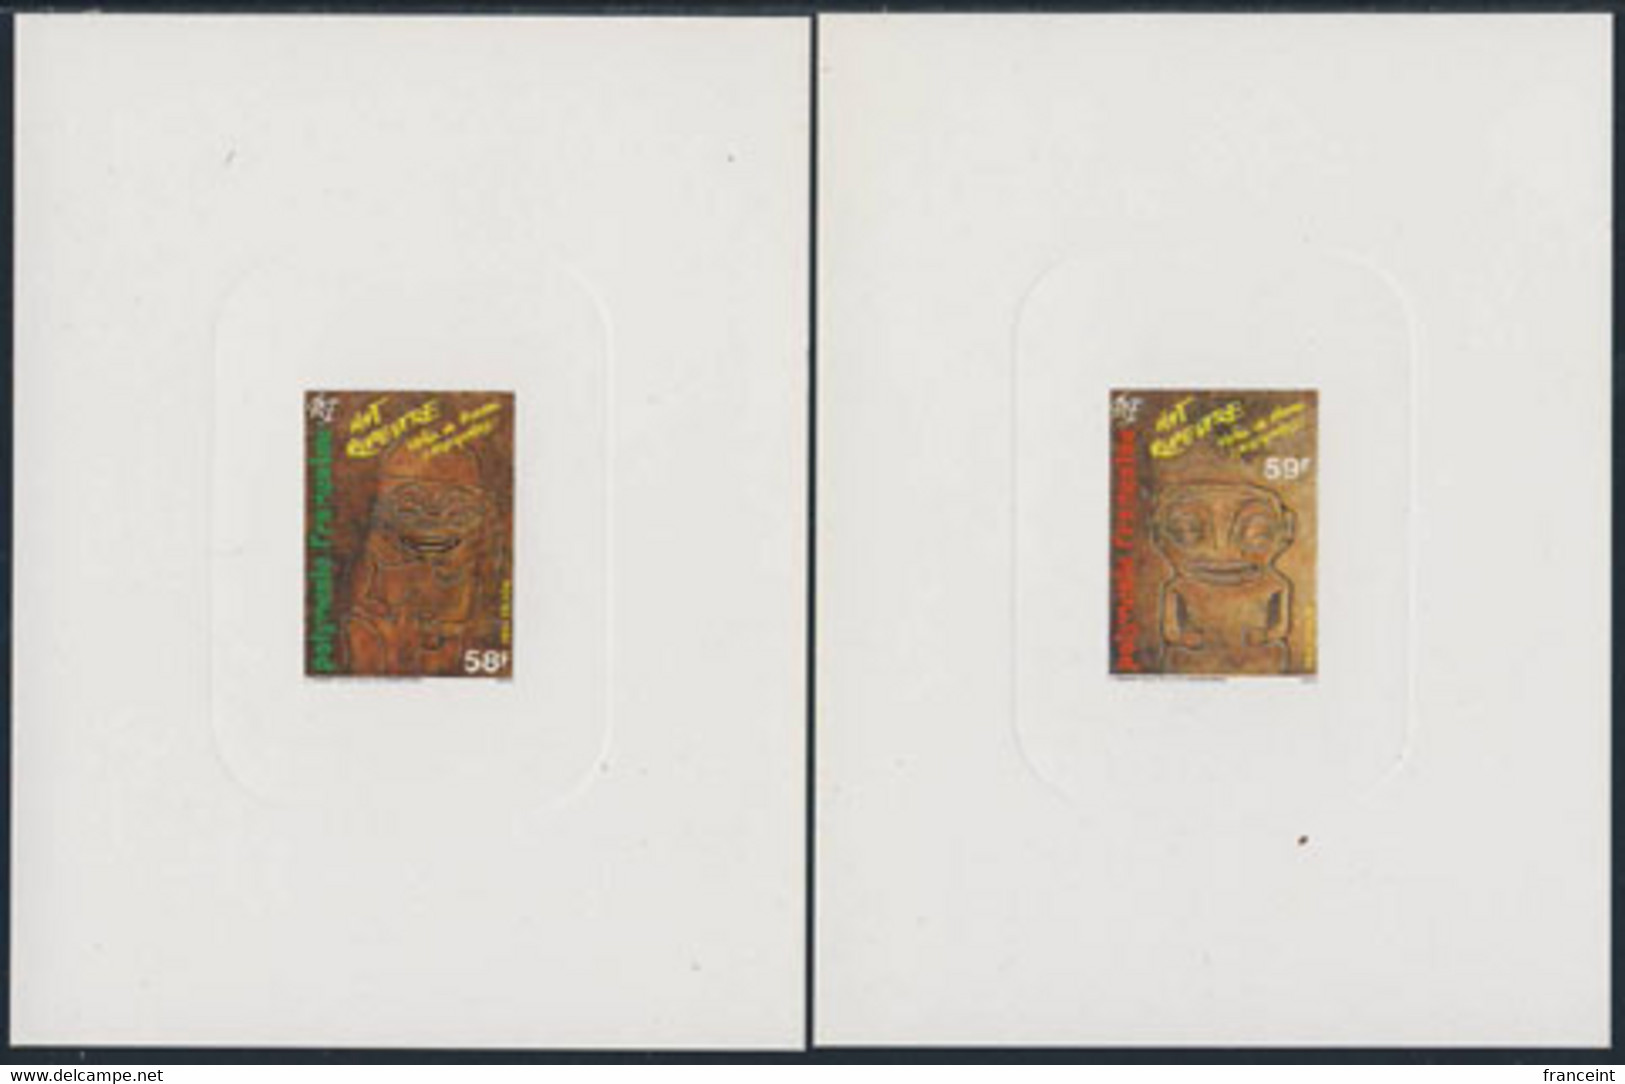 FRENCH POLYNESIA (1986) Tiki Rock Carvings. Set Of 2 Deluxe Sheets. Scott Nos 436-7, Yvert Nos 259-60. - Sin Dentar, Pruebas De Impresión Y Variedades